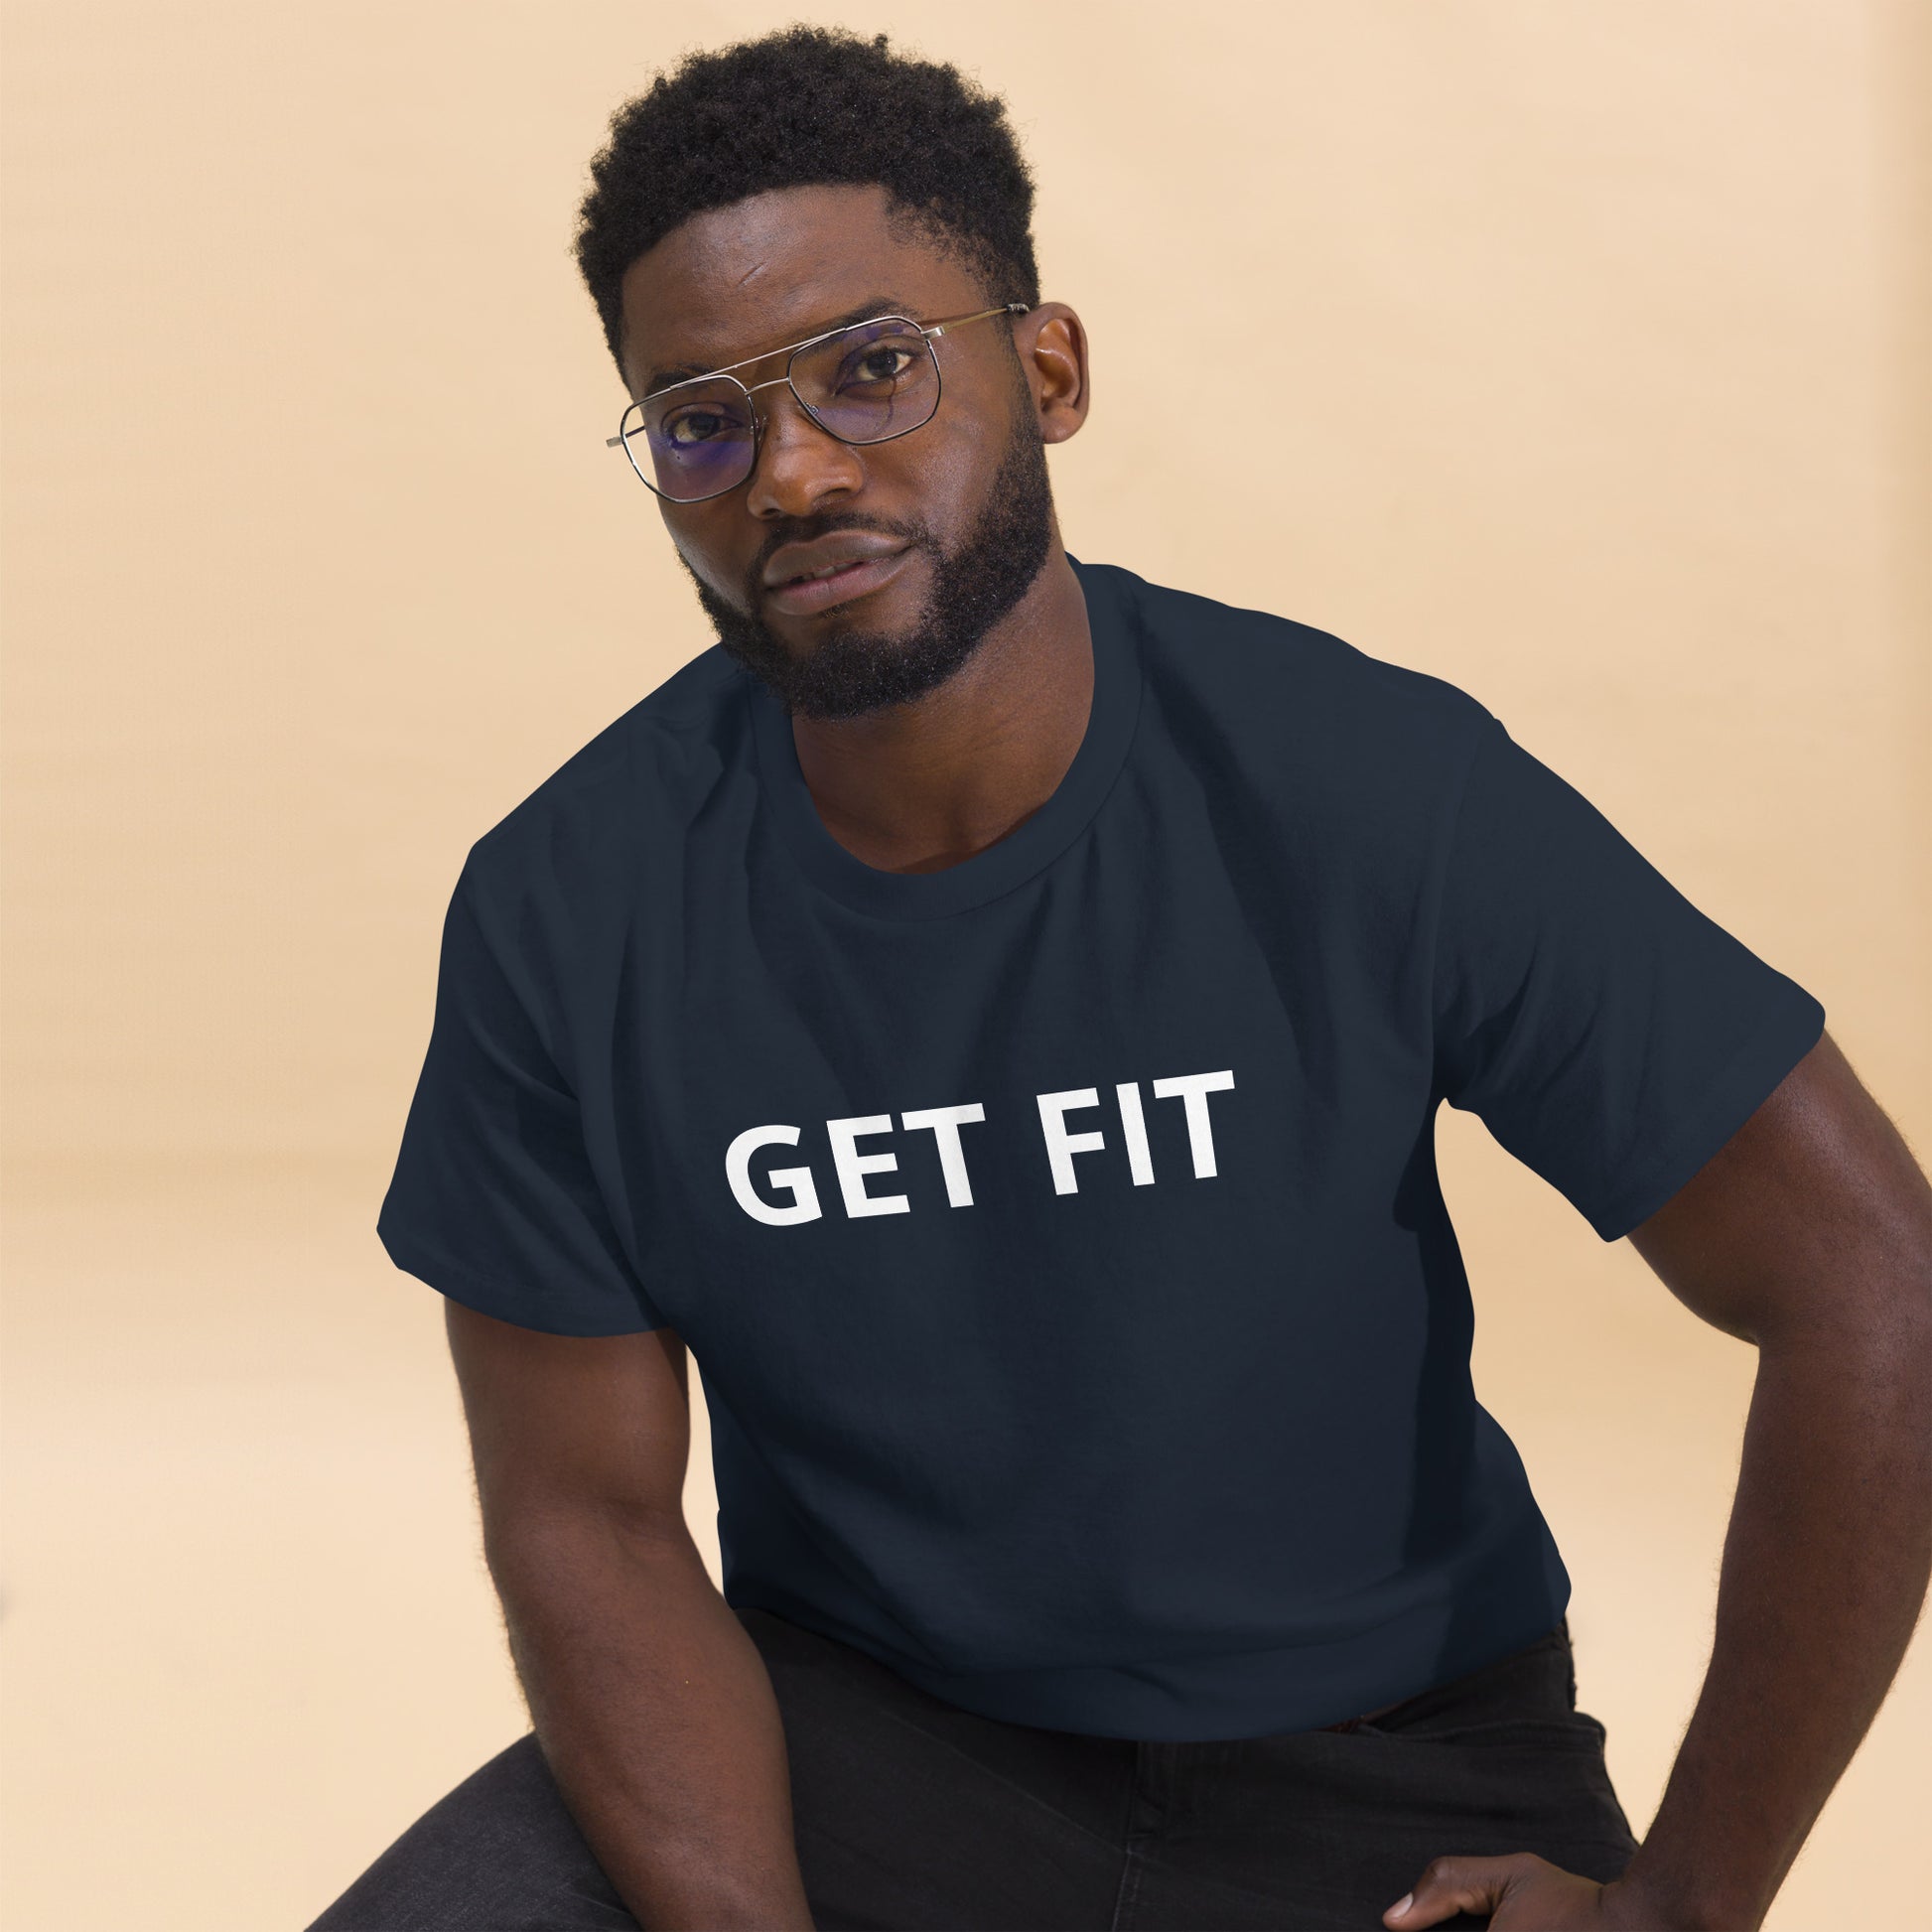 gym tshirts - workout - tshirts - men tshirts - shirts